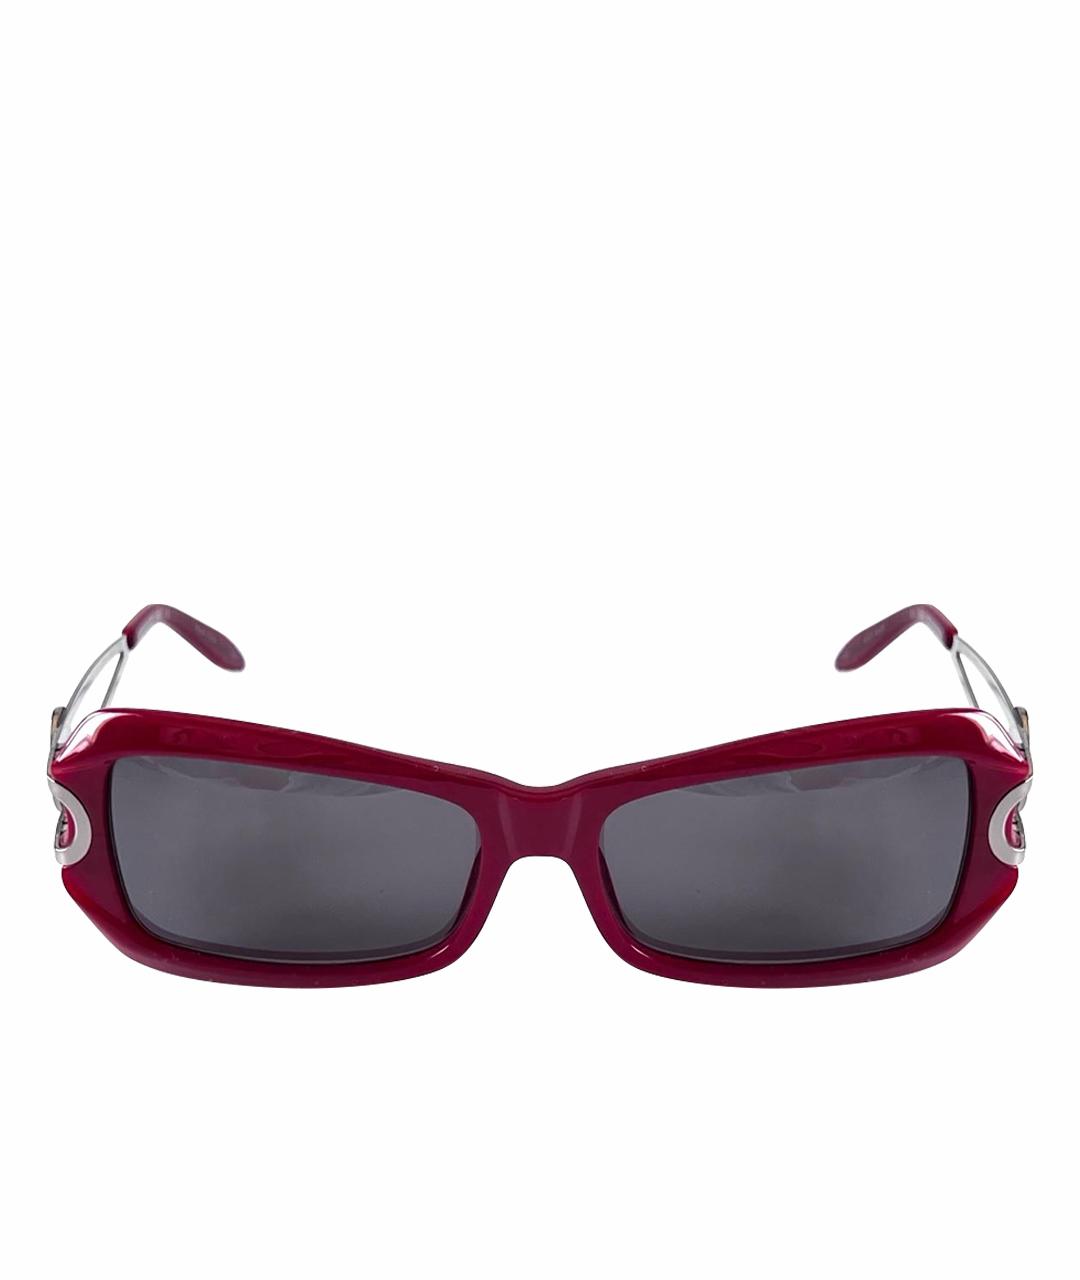 CERRUTI 1881 Бордовые пластиковые солнцезащитные очки, фото 1